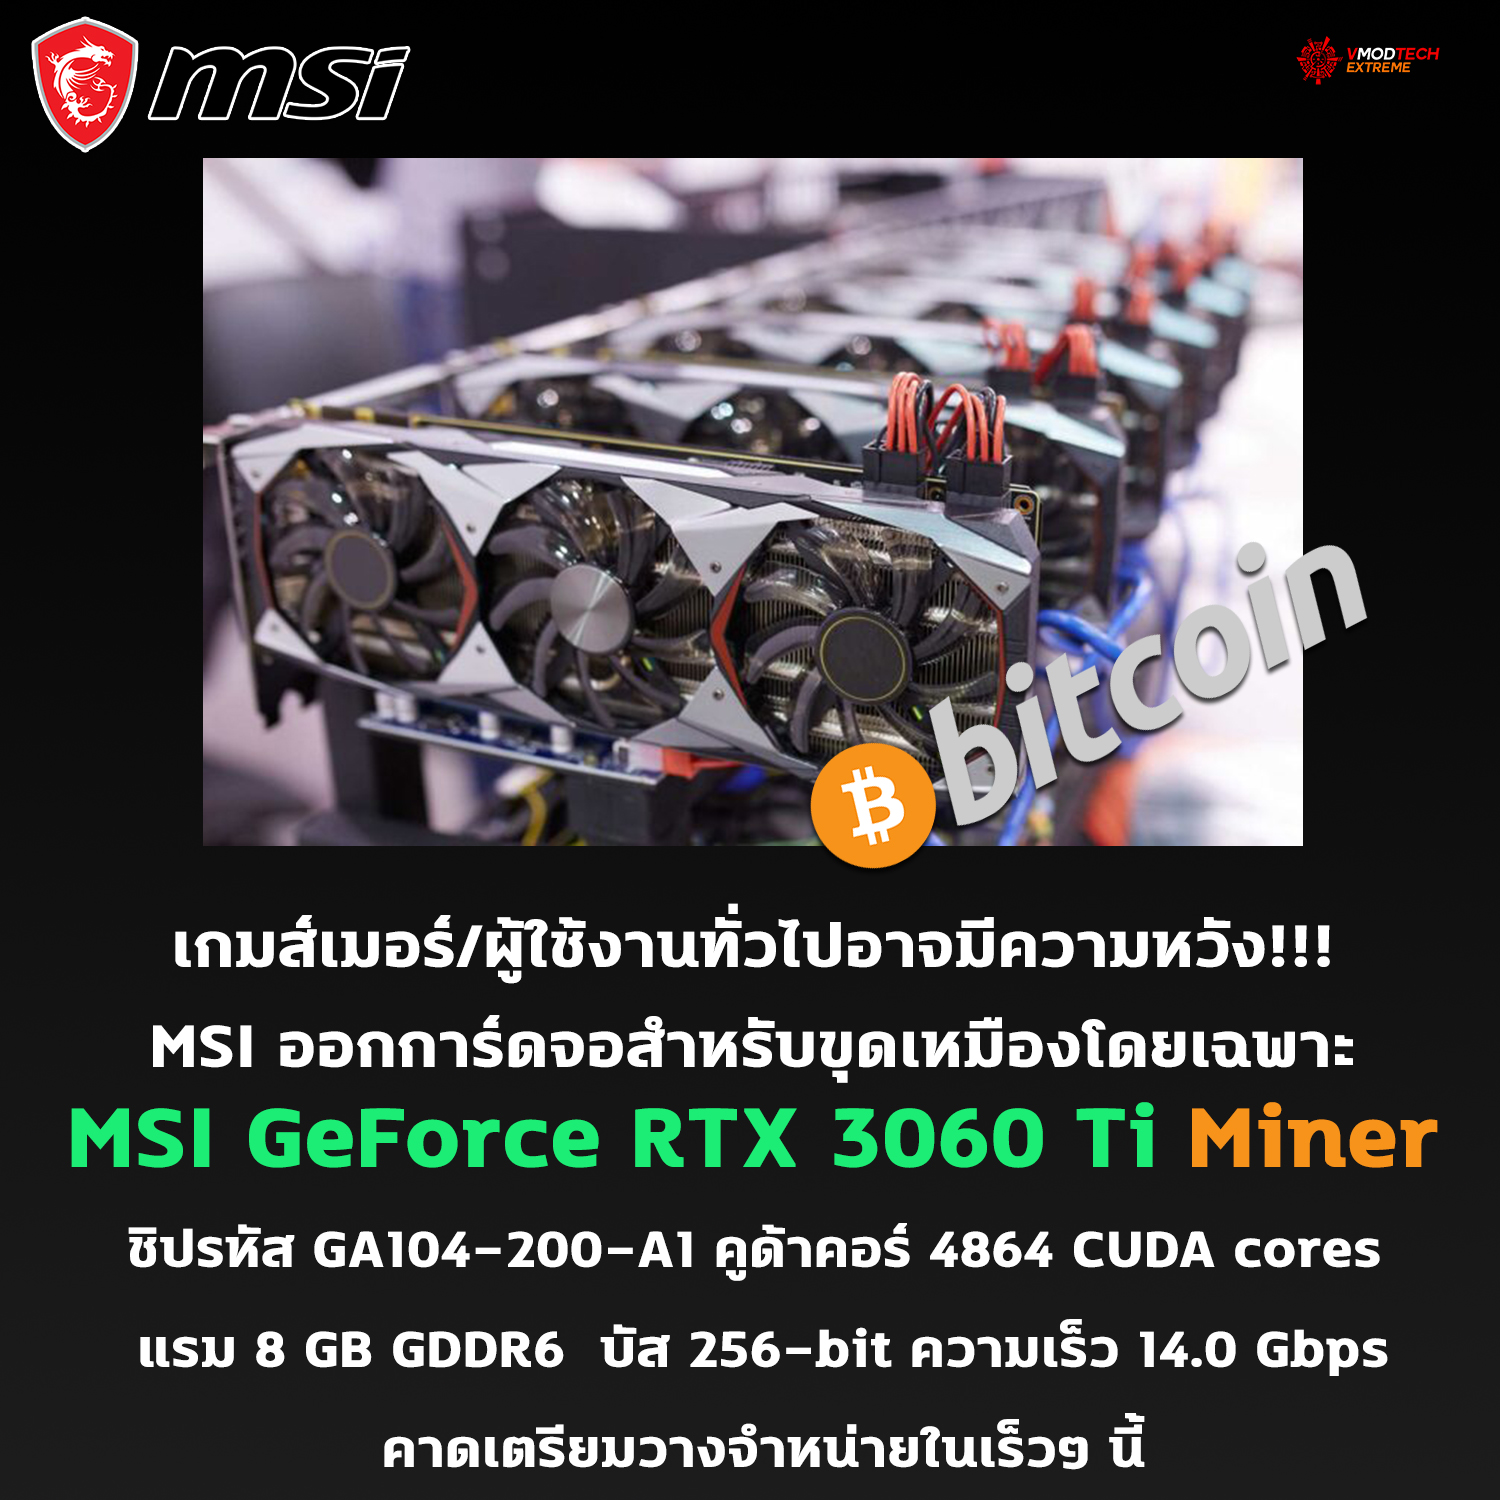 หลุดการ์ดจอ MSI GeForce RTX 3060 Ti Miner ความจุแรม 8G ออกแบบมาสำหรับขุดเหมือง Crypto โดยเฉพาะ!!! 